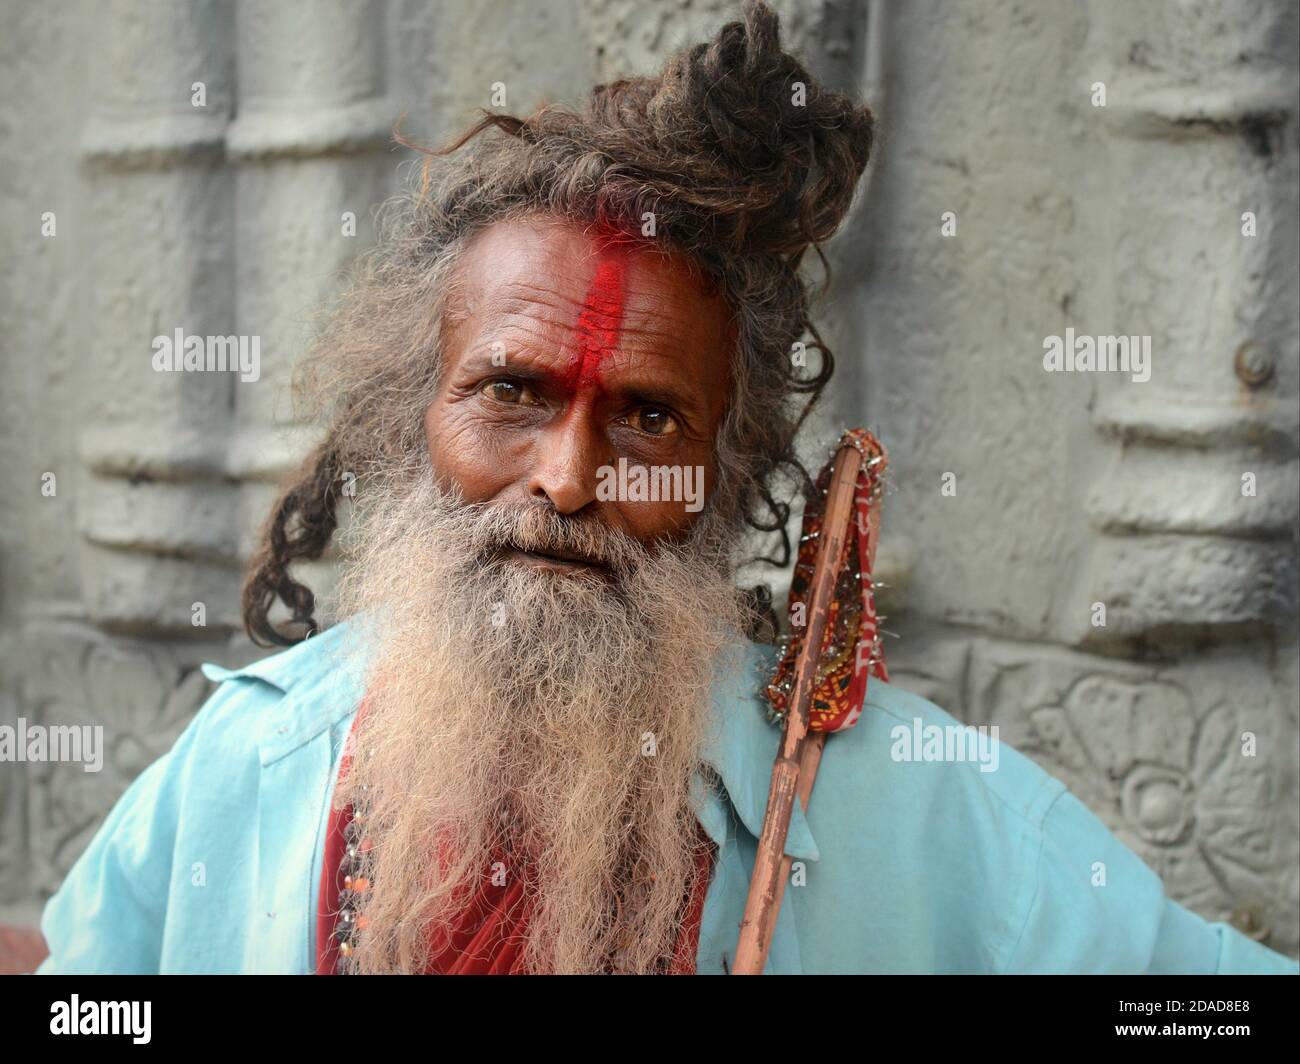 Alter indischer Hindu Sadhu / Pilger mit grauem Brötchen, langem grauem Bart und roter Tilak-Markierung auf der Stirn posiert für die Kamera während des Navratri-Festivals. Stockfoto